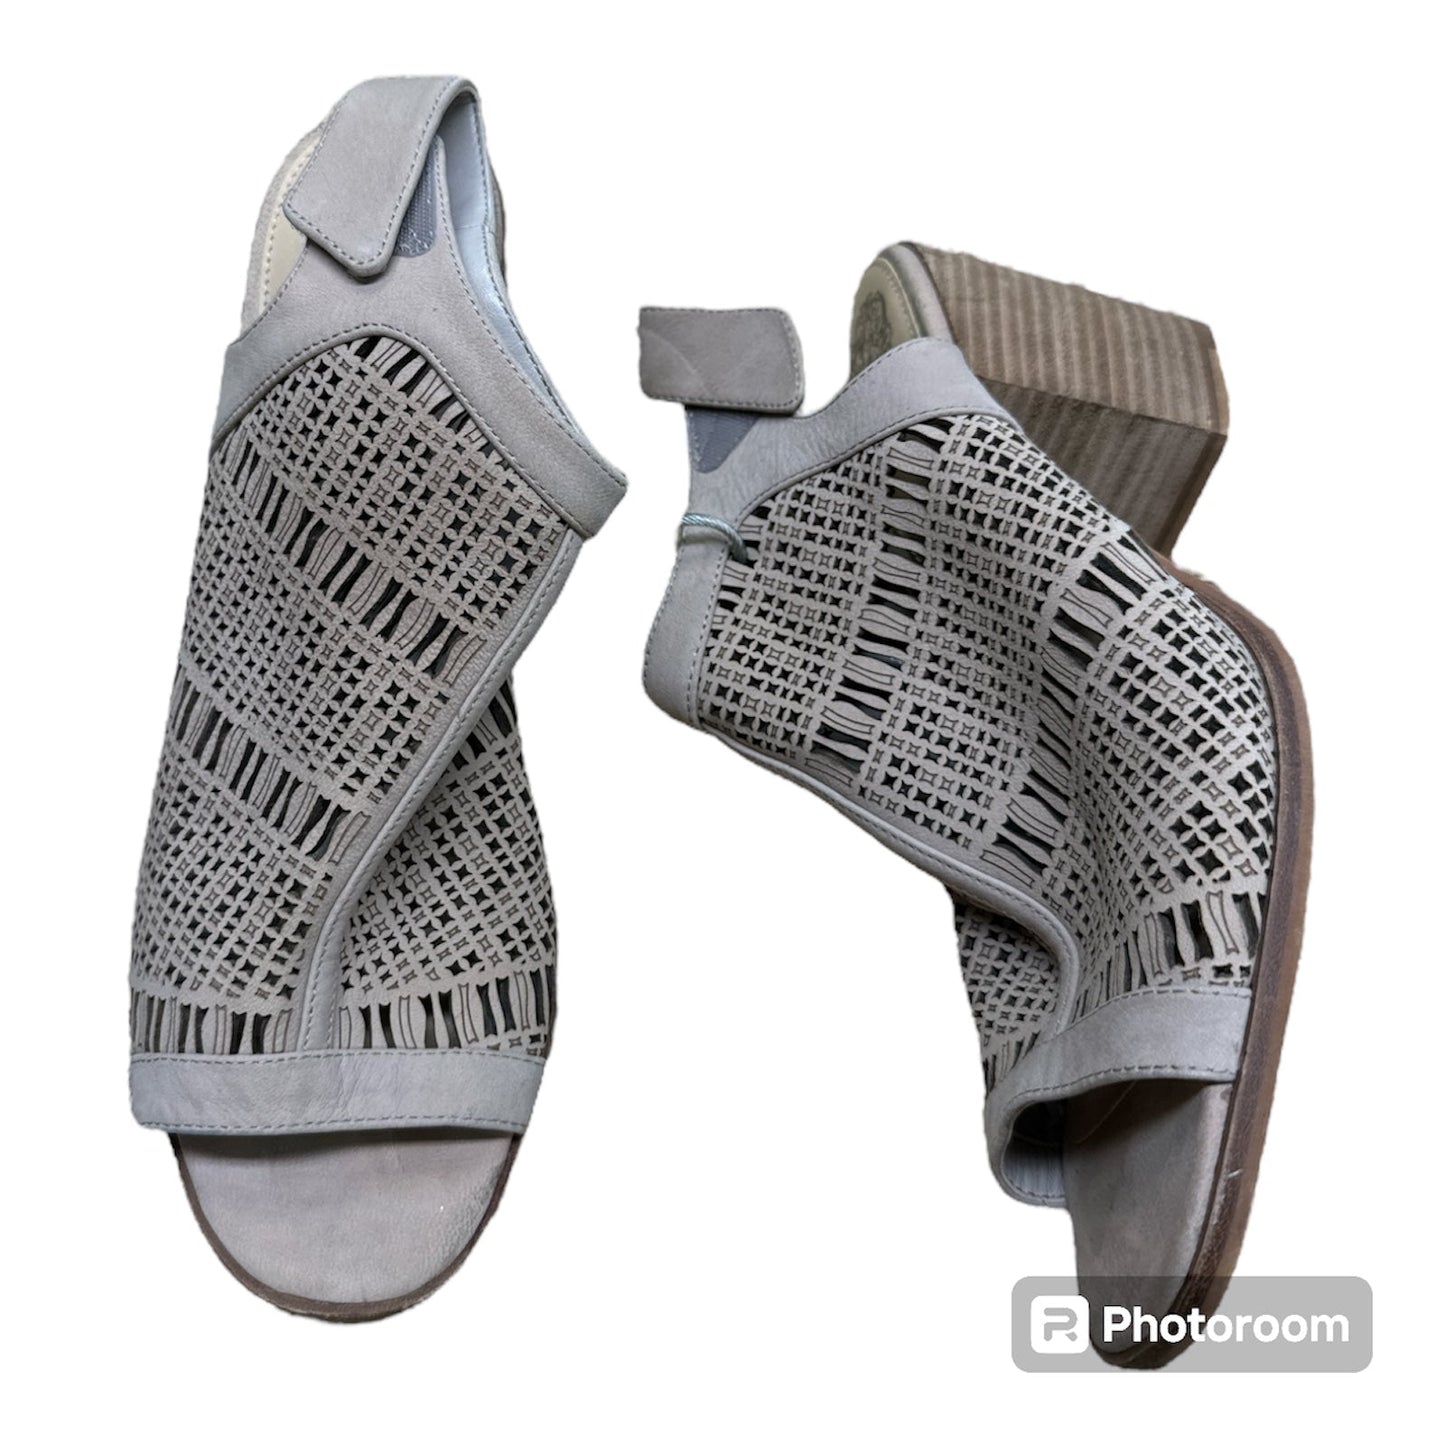 Beige Sandals Heels Block Vince Camuto, Size 8.5